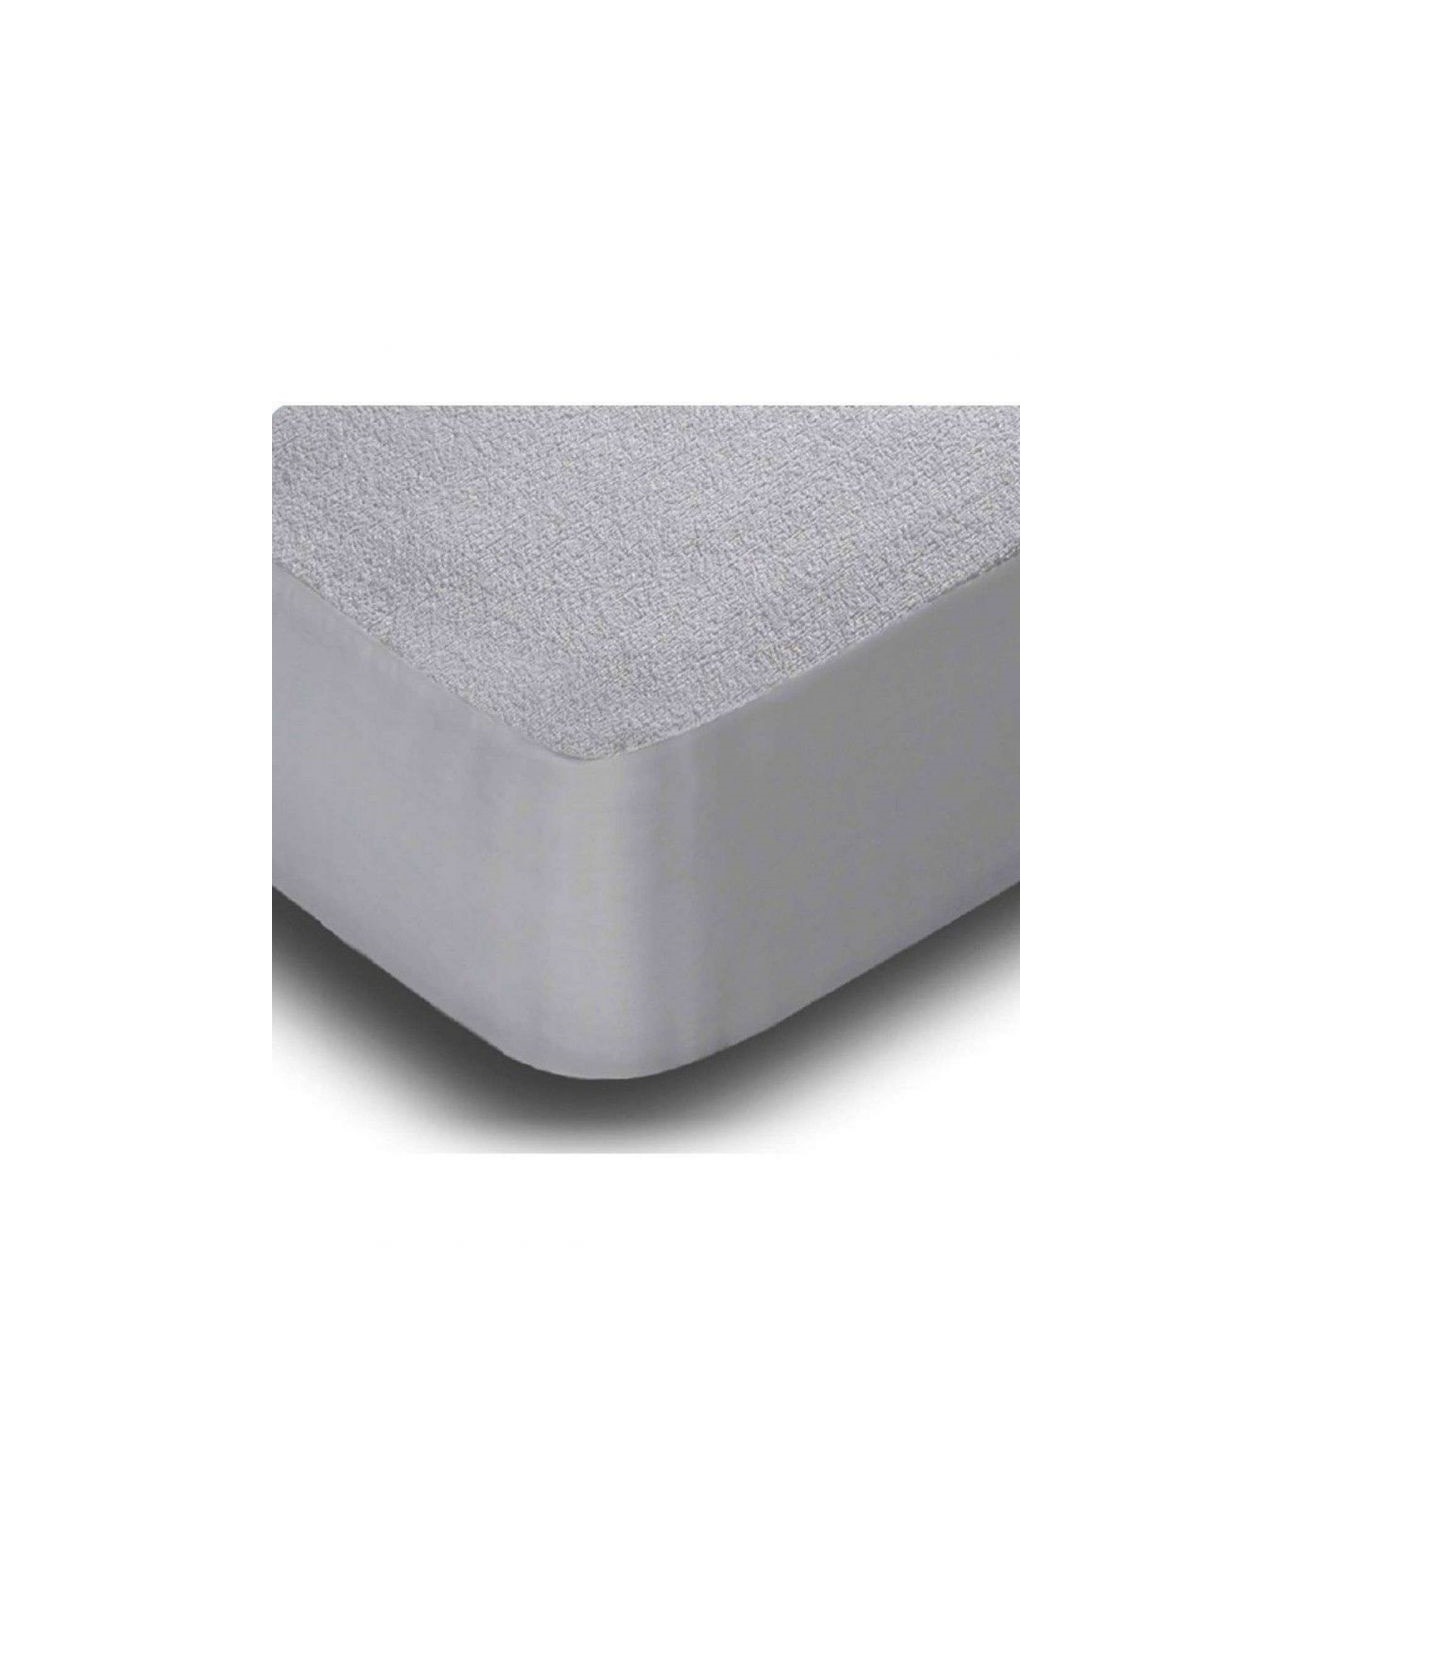 Mattress Elegante Κάλυμμα στρώματος αδιάβροχο (επίστρωμα) 150 x 200 cm + 35 cm